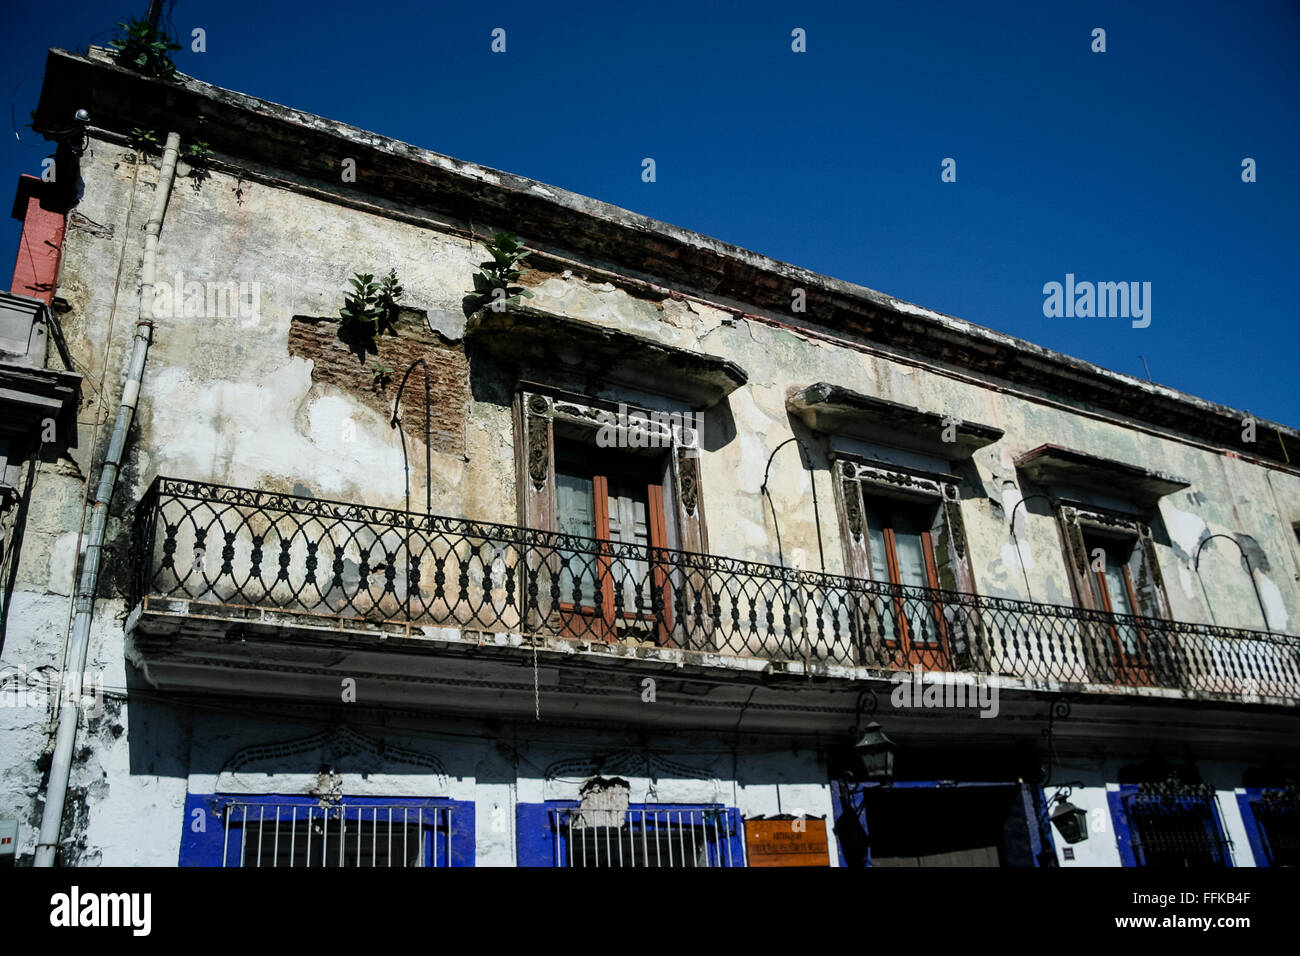 Oaxaca, Mexico. Crumbling building facade. Stock Photo